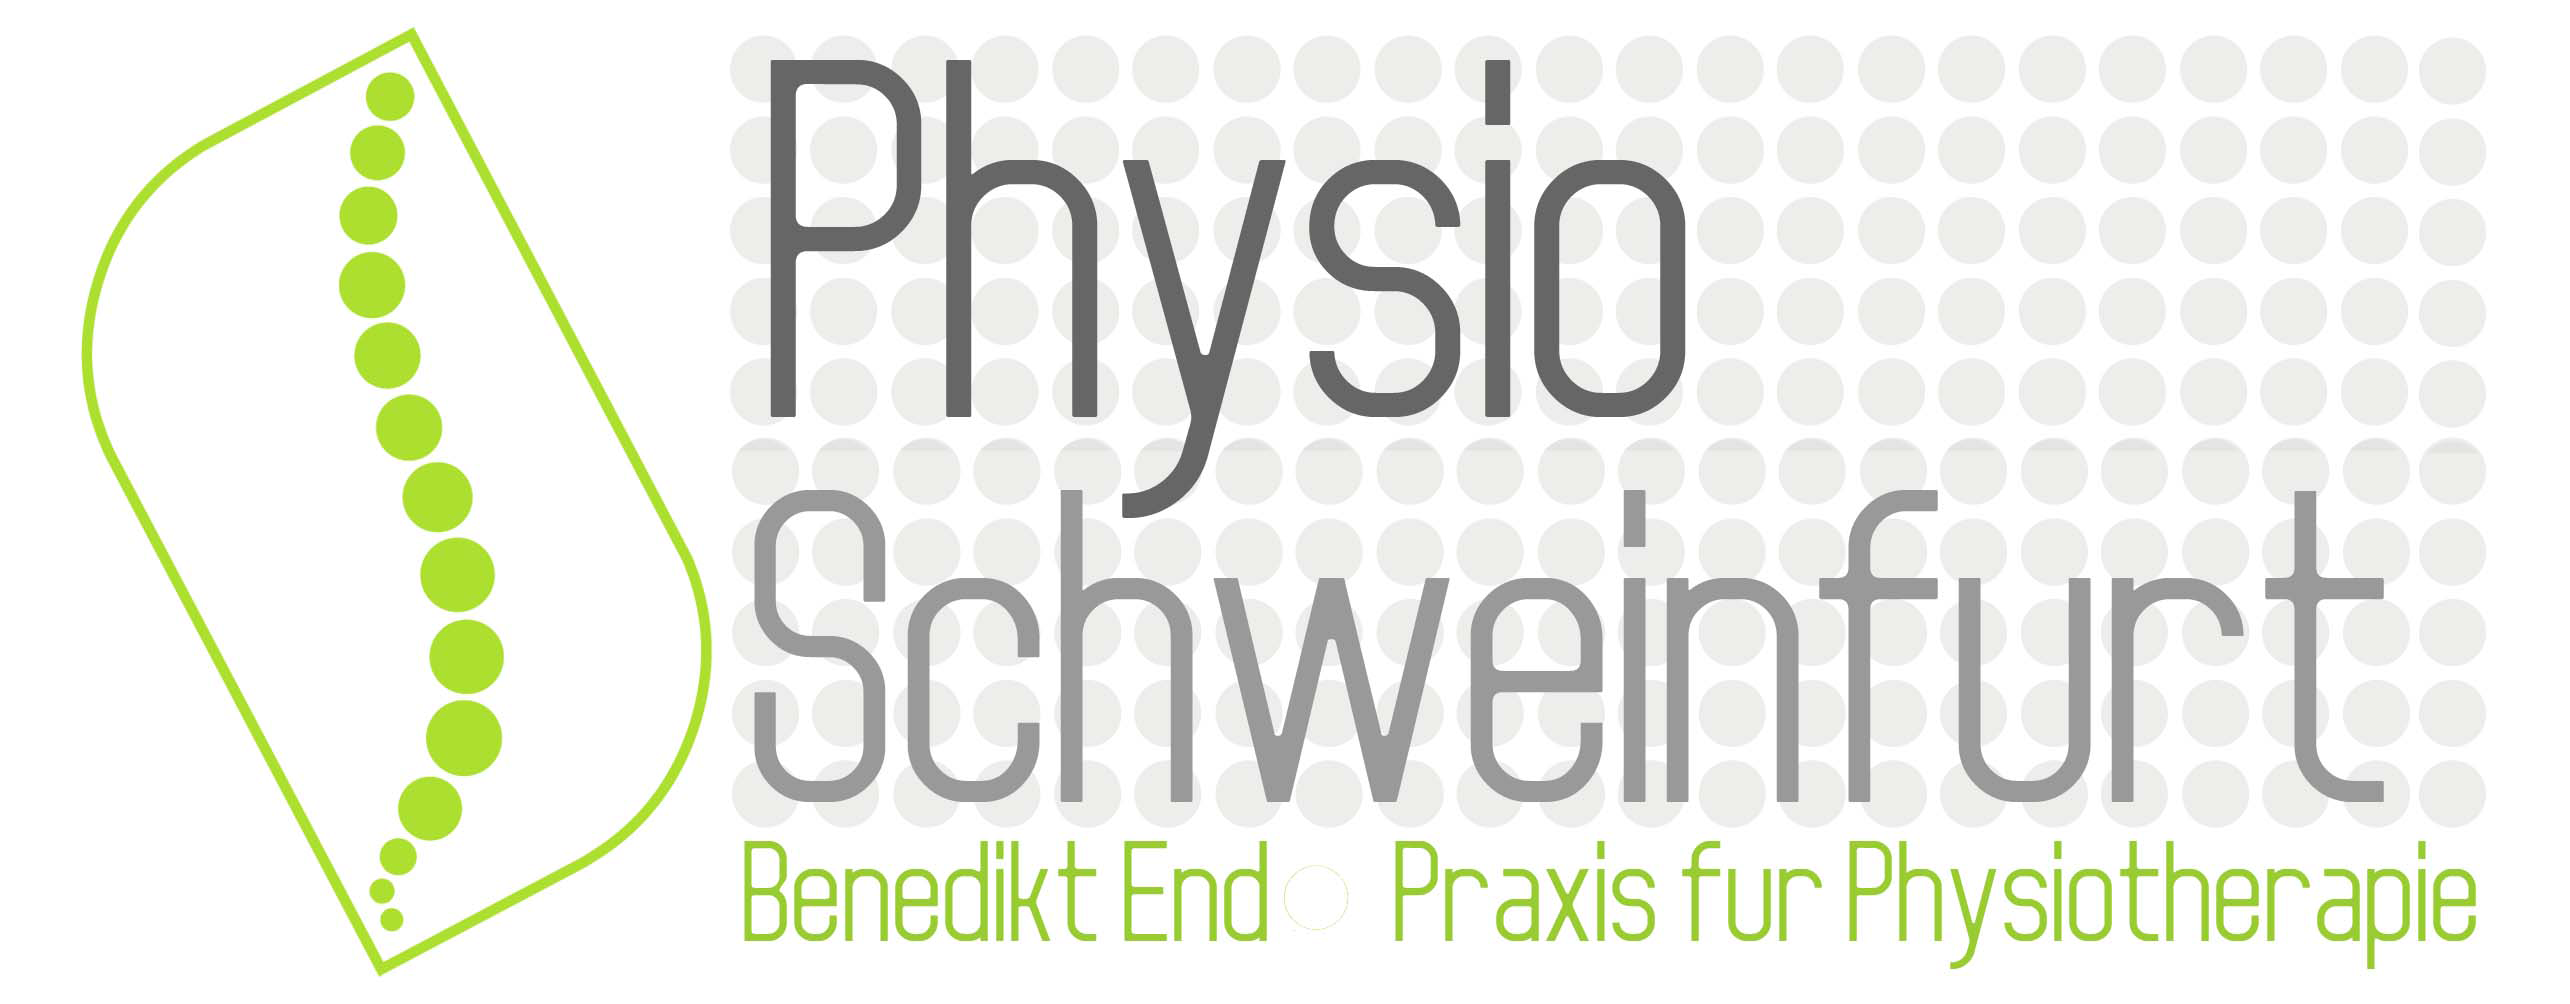 Physio Schweinfurt, Benedikt End